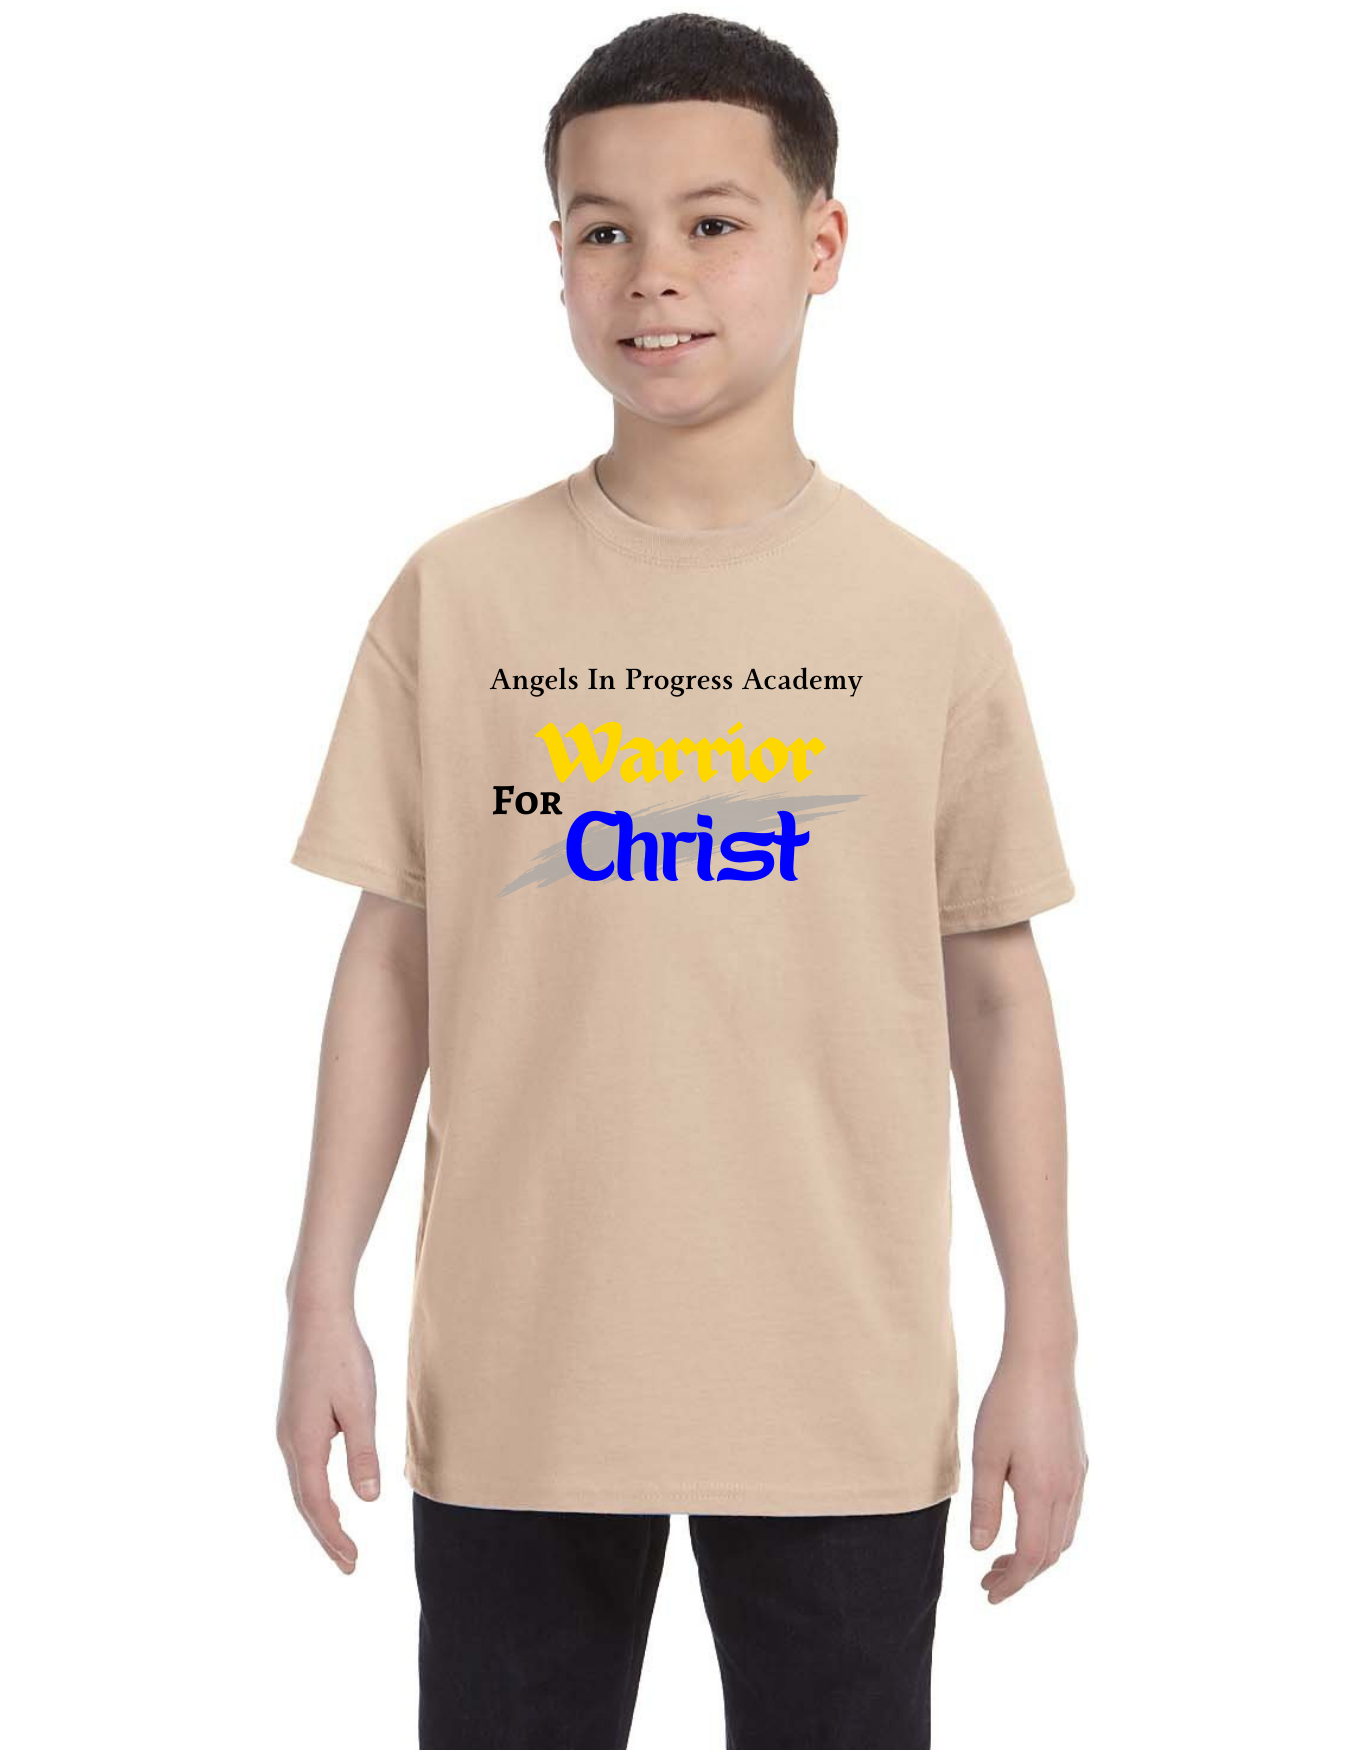 Pre Order - Warriors for Christ T Shirt